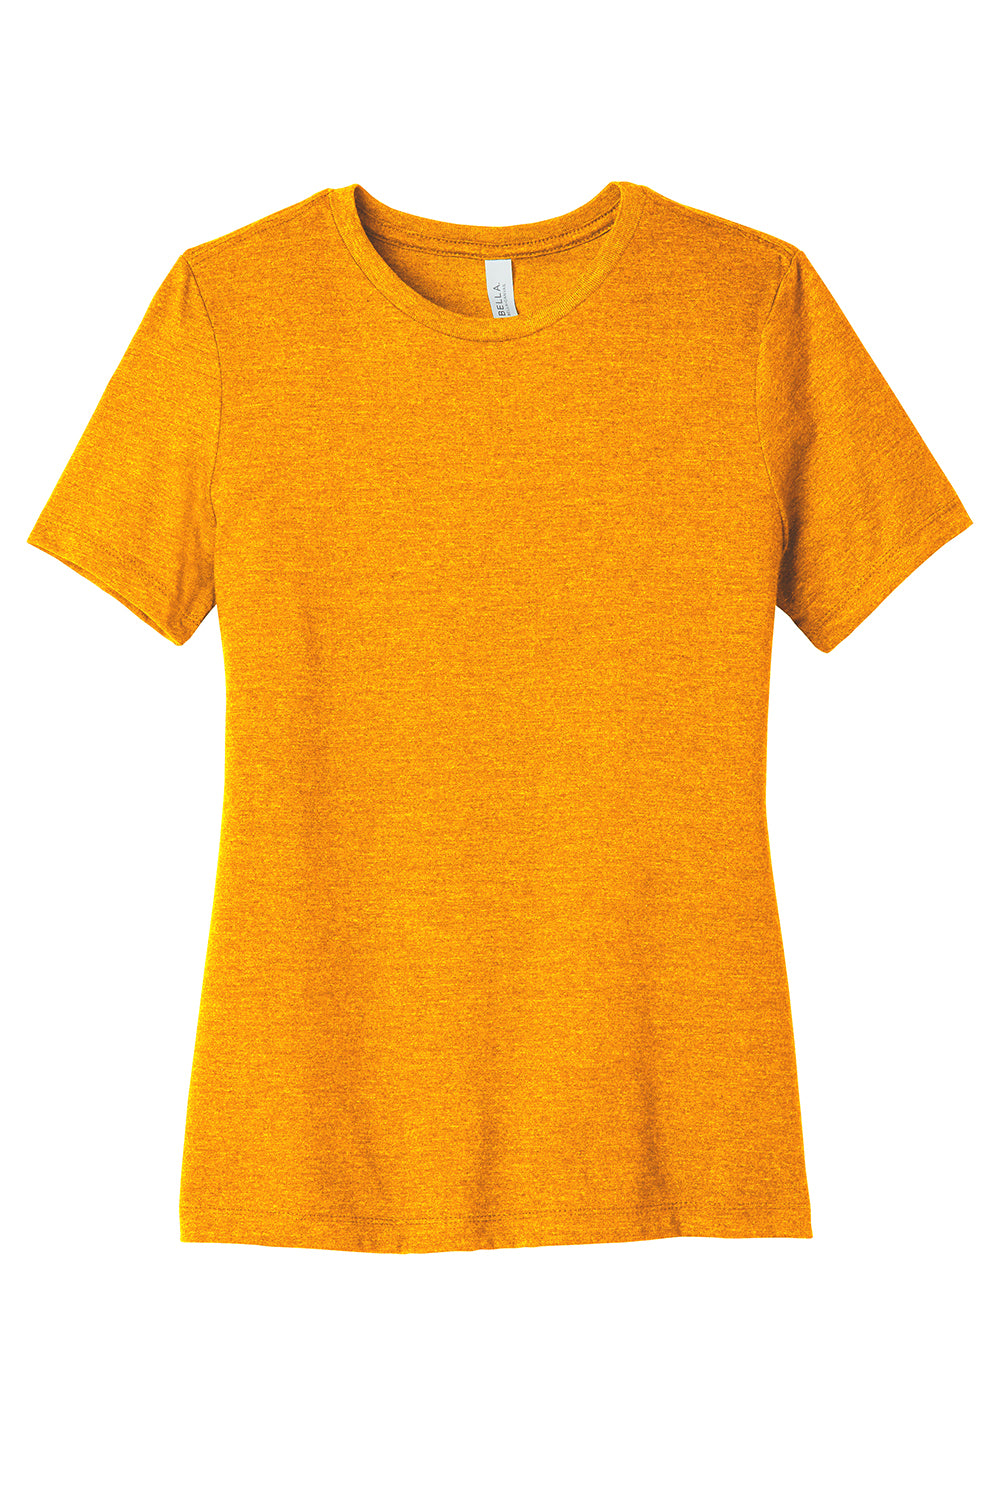 Bella + Canvas BC6400CVC/6400CVC Womens CVC Short Sleeve Crewneck T-Shirt Heather Marmalade Flat Front